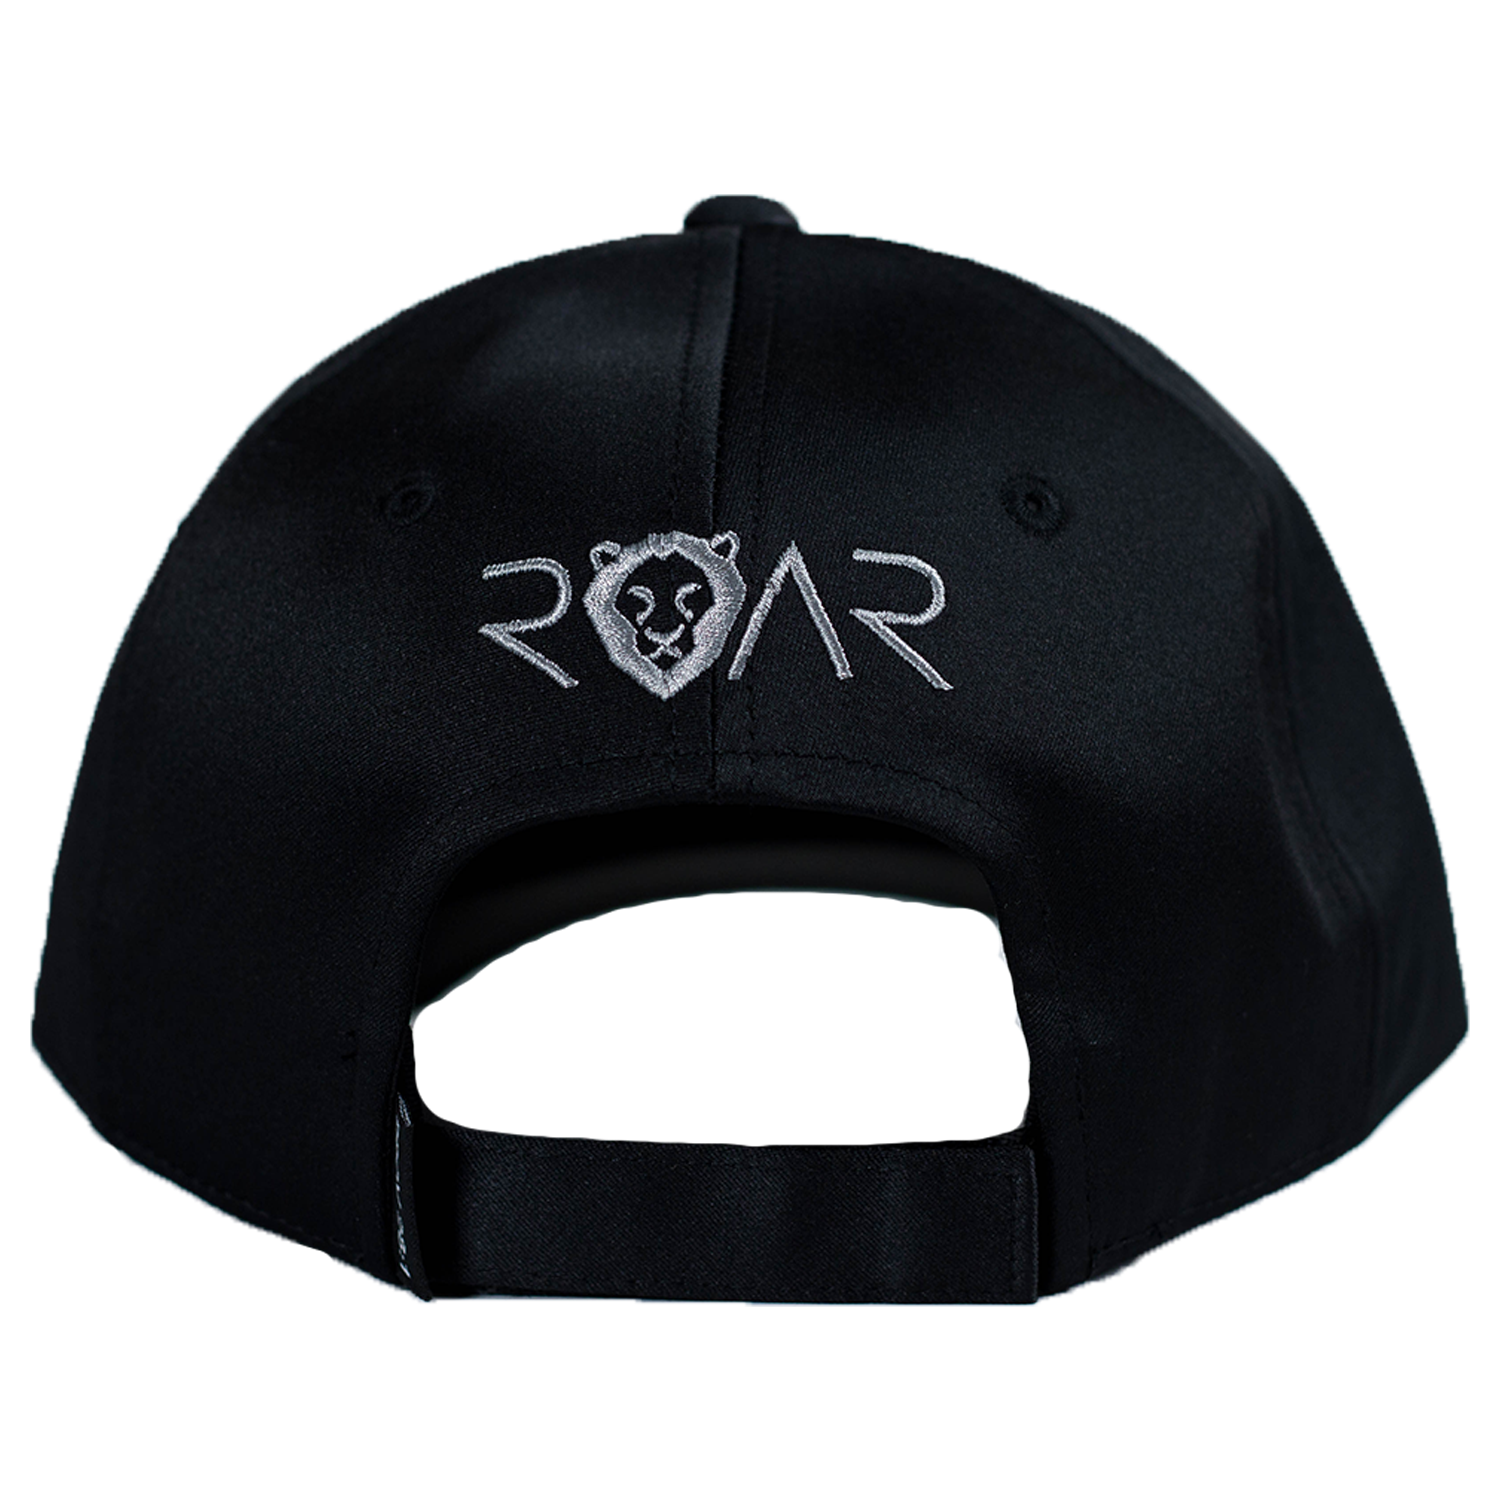 ROAR GOLF HAT - BLACK/GRAY